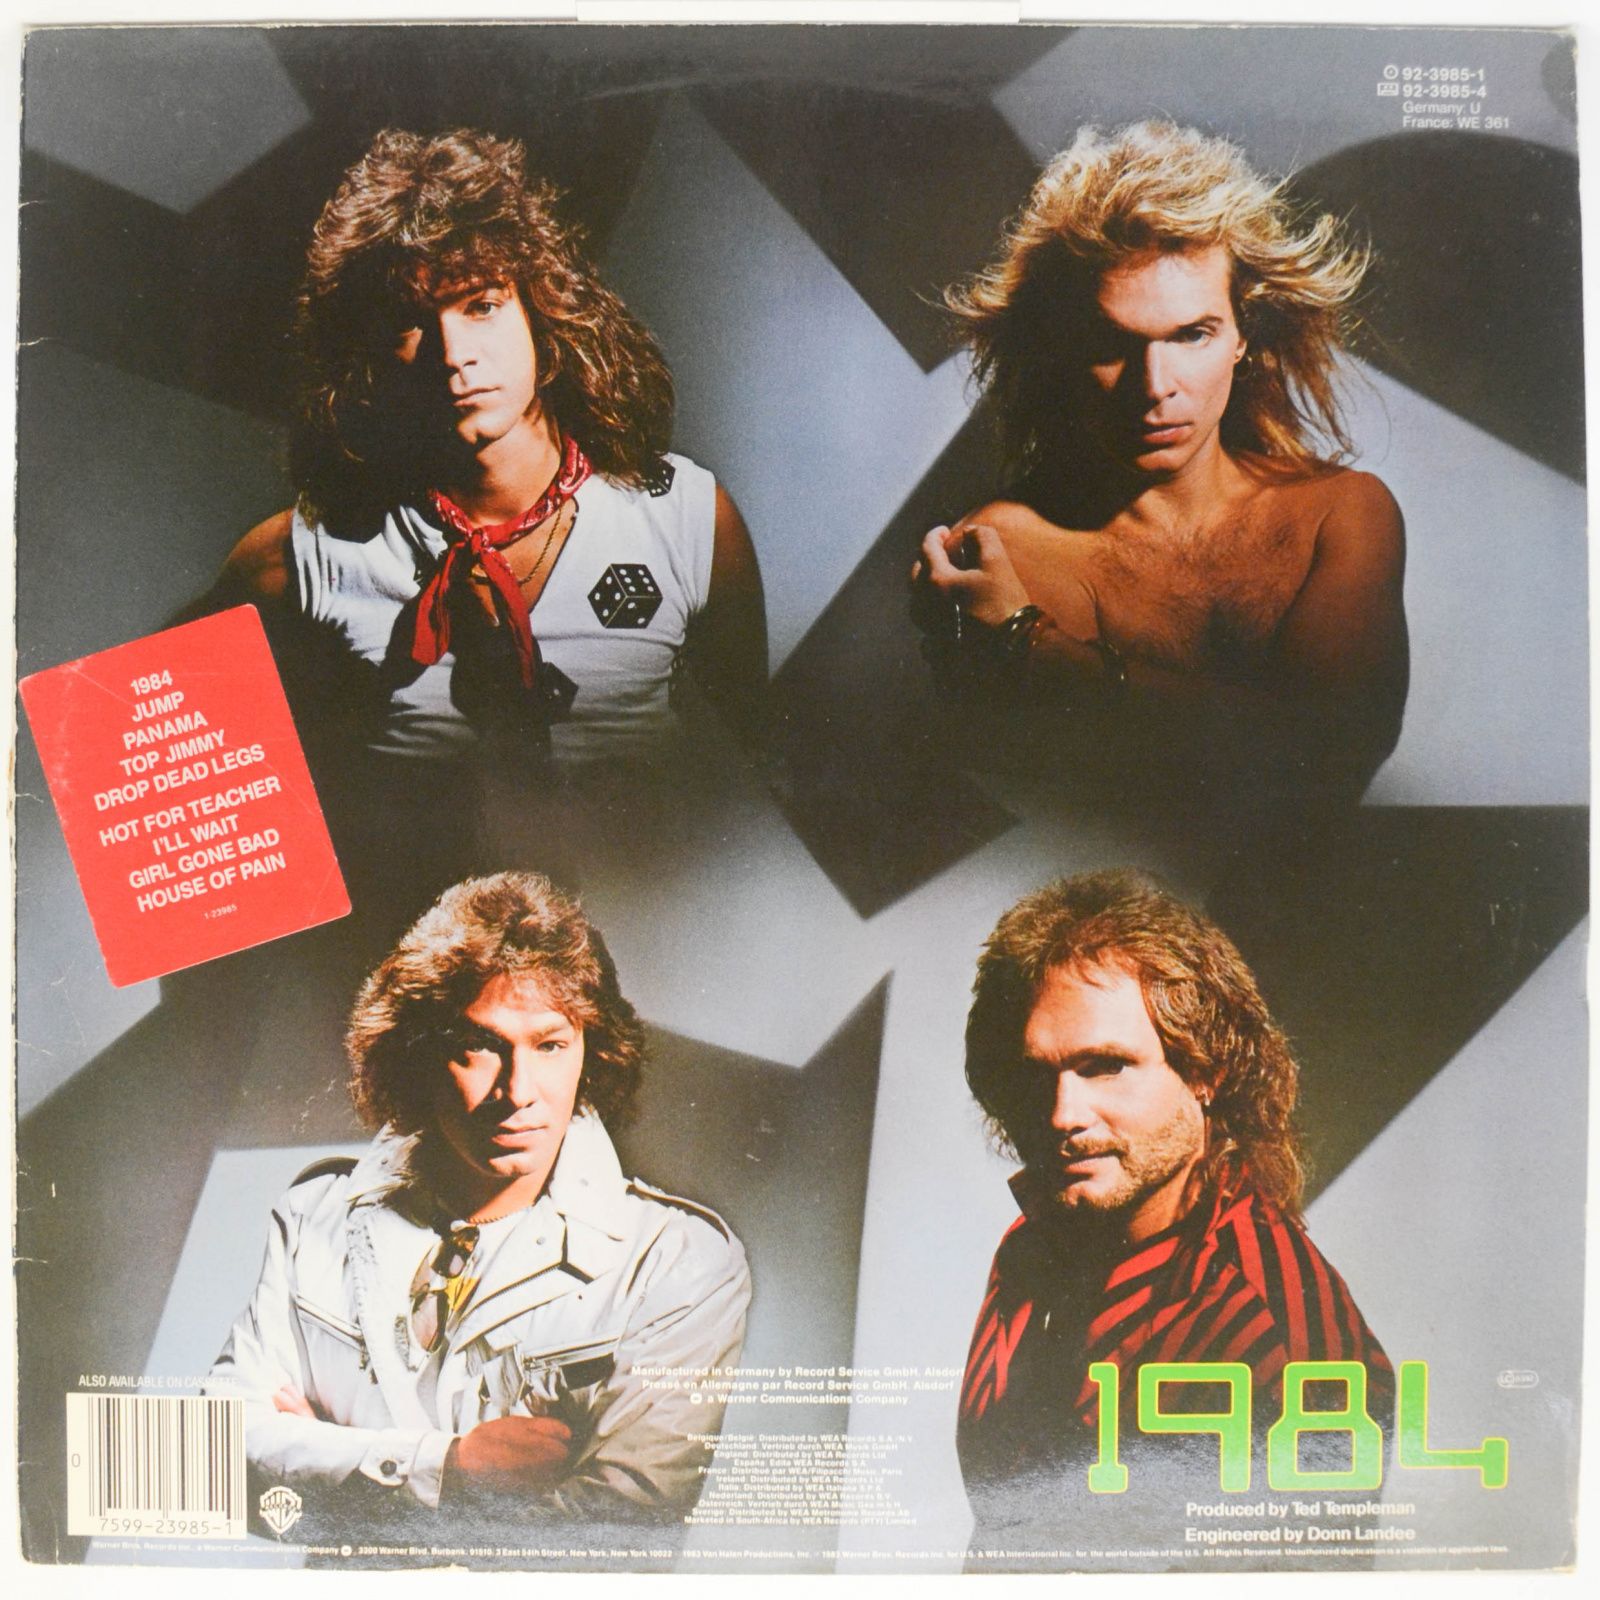 Van Halen — 1984, 1984